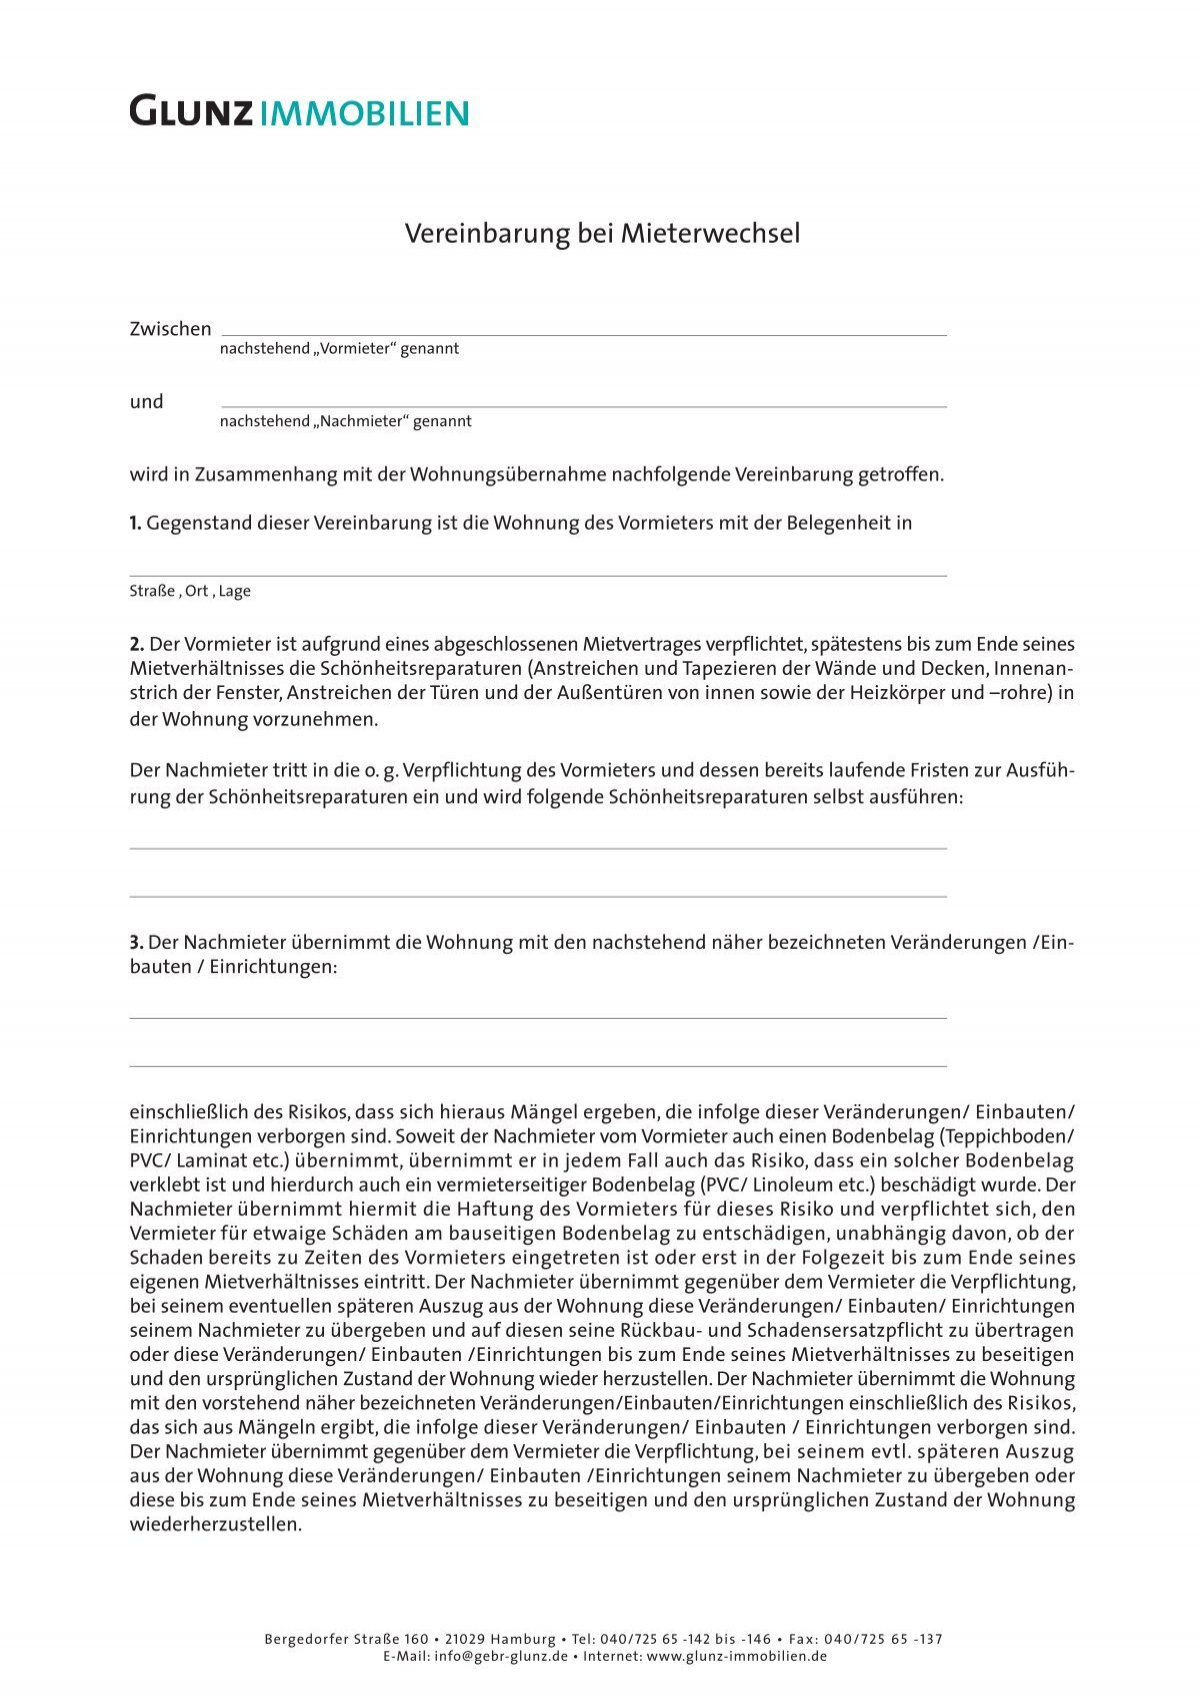 Vereinbarung bei mieterwechsel pdf